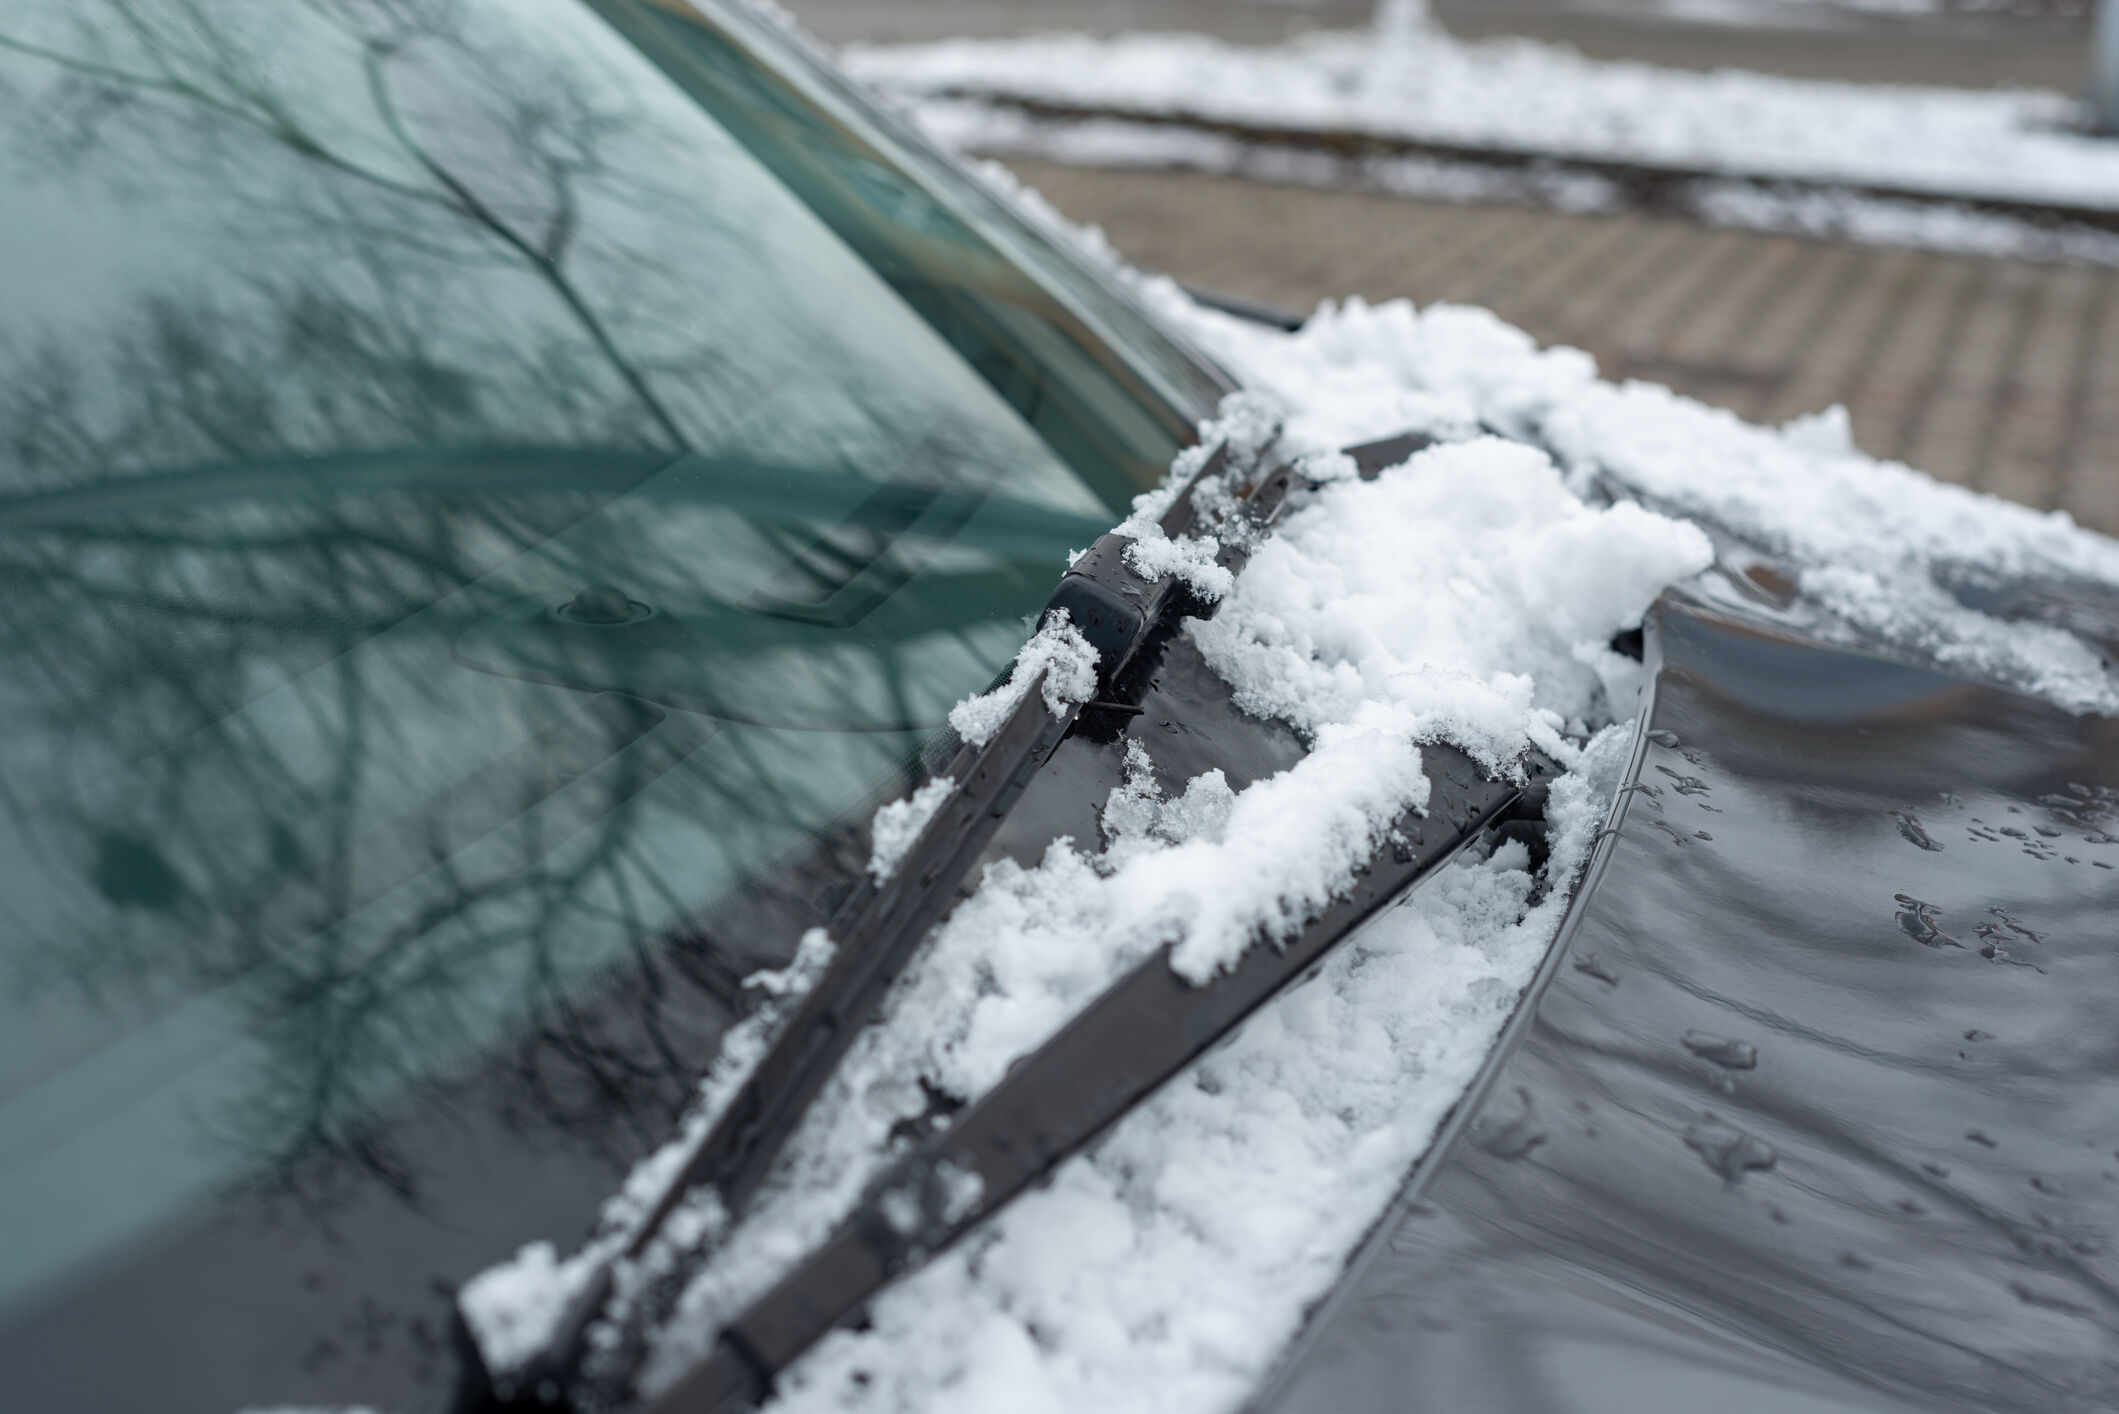 华盛顿特区警方警告不要在寒冷天气中无人看管的情况下将汽车运行